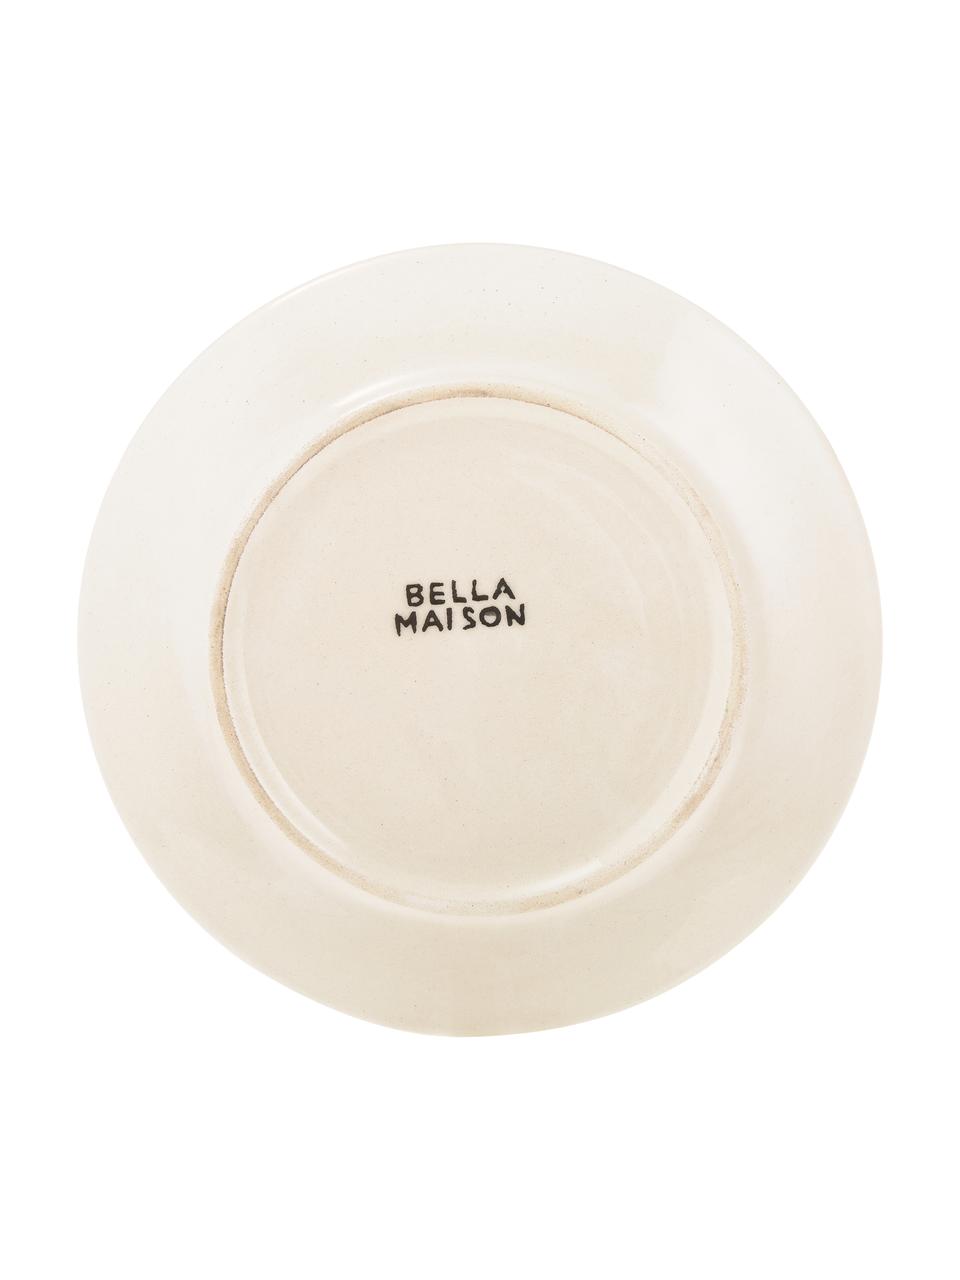 Ručně vyrobené snídaňové talíře s barevným přechodem Pure, 6 ks, Keramika, Modrá, bílá, Ø 21 cm